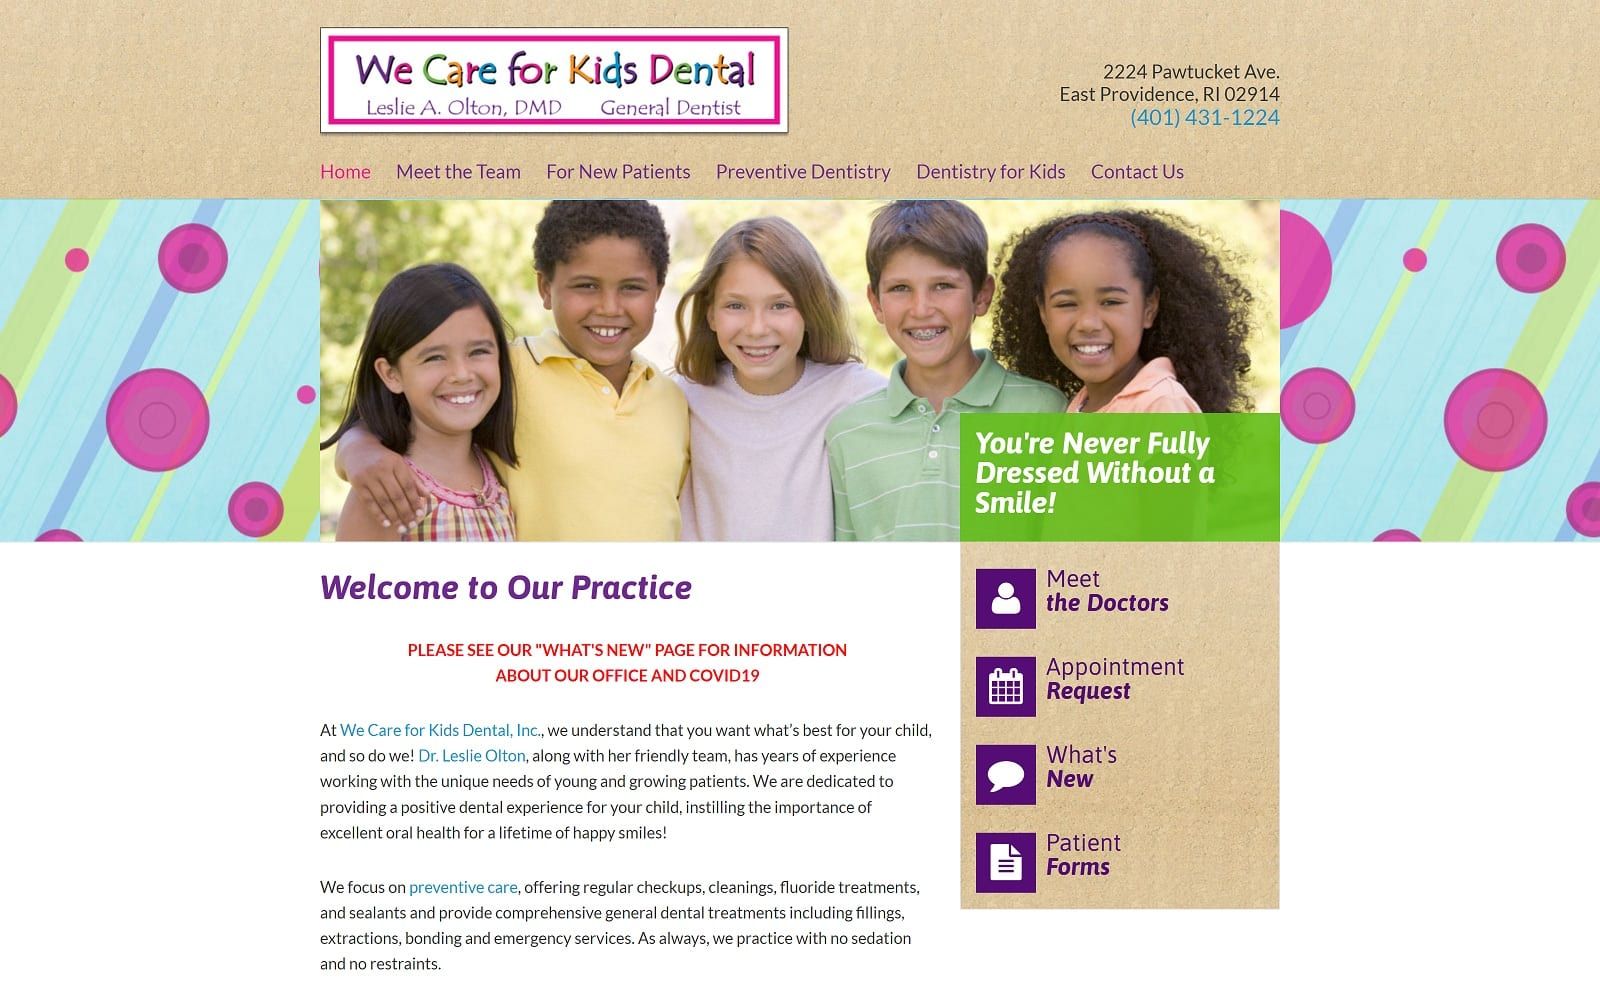 The screenshot of we care for kids dental: leslie a olton, dmd wecareforkidsdental. Com website